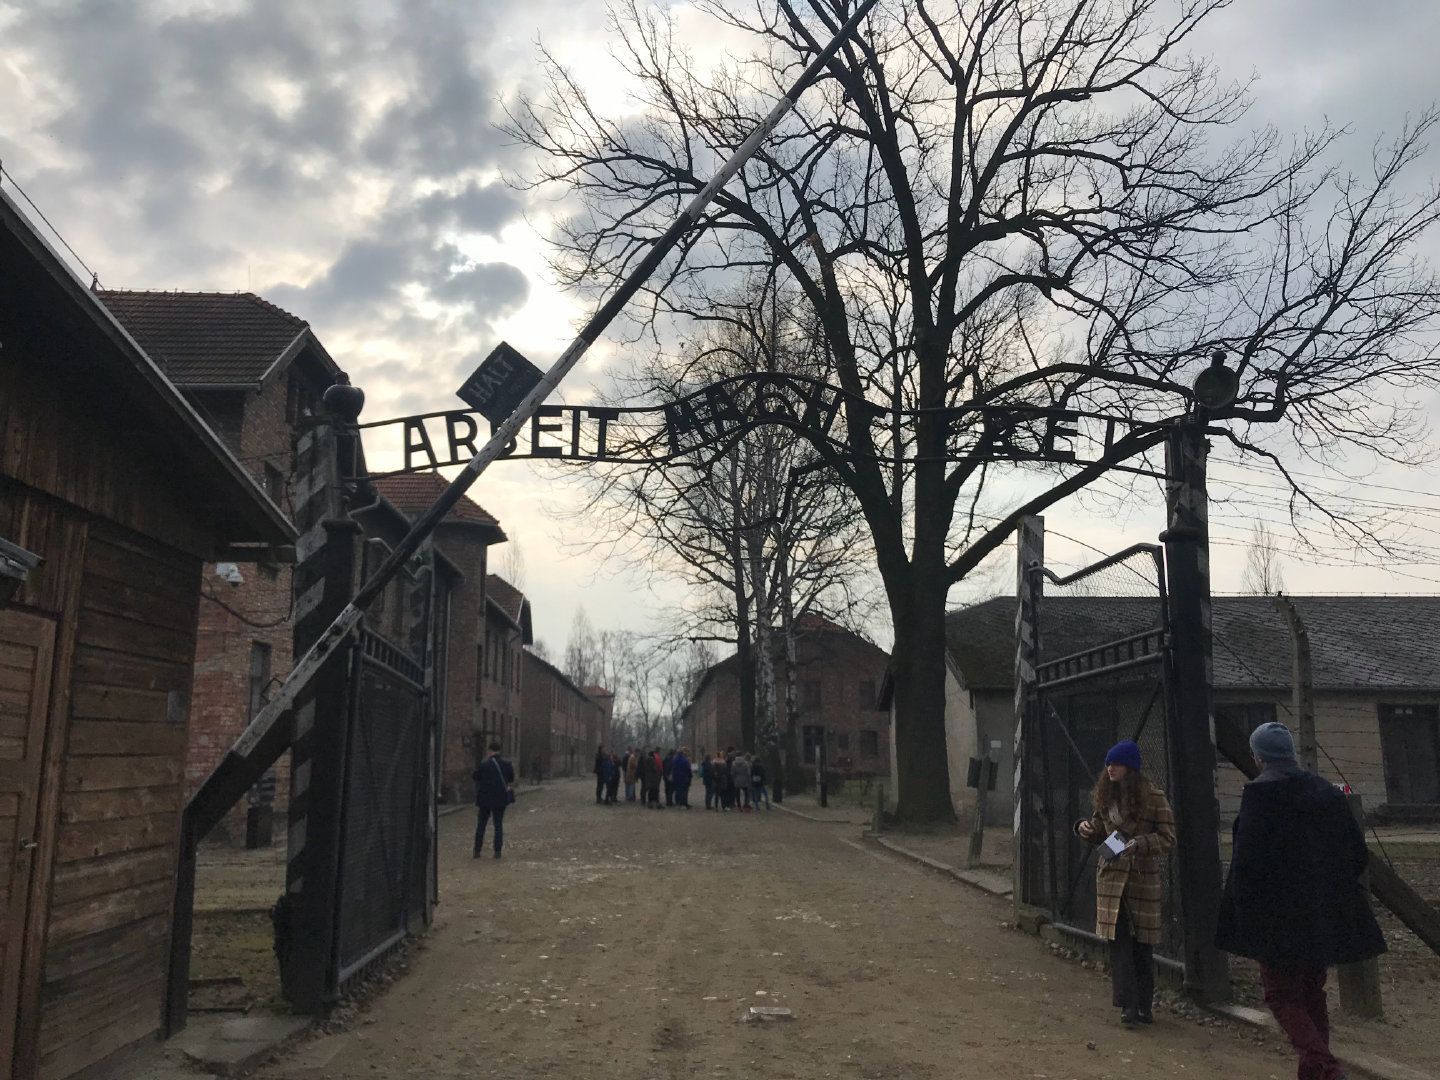 奥斯维辛集中营解放75周年 西媒拍摄内部还原屠杀现场 - 外媒参考网